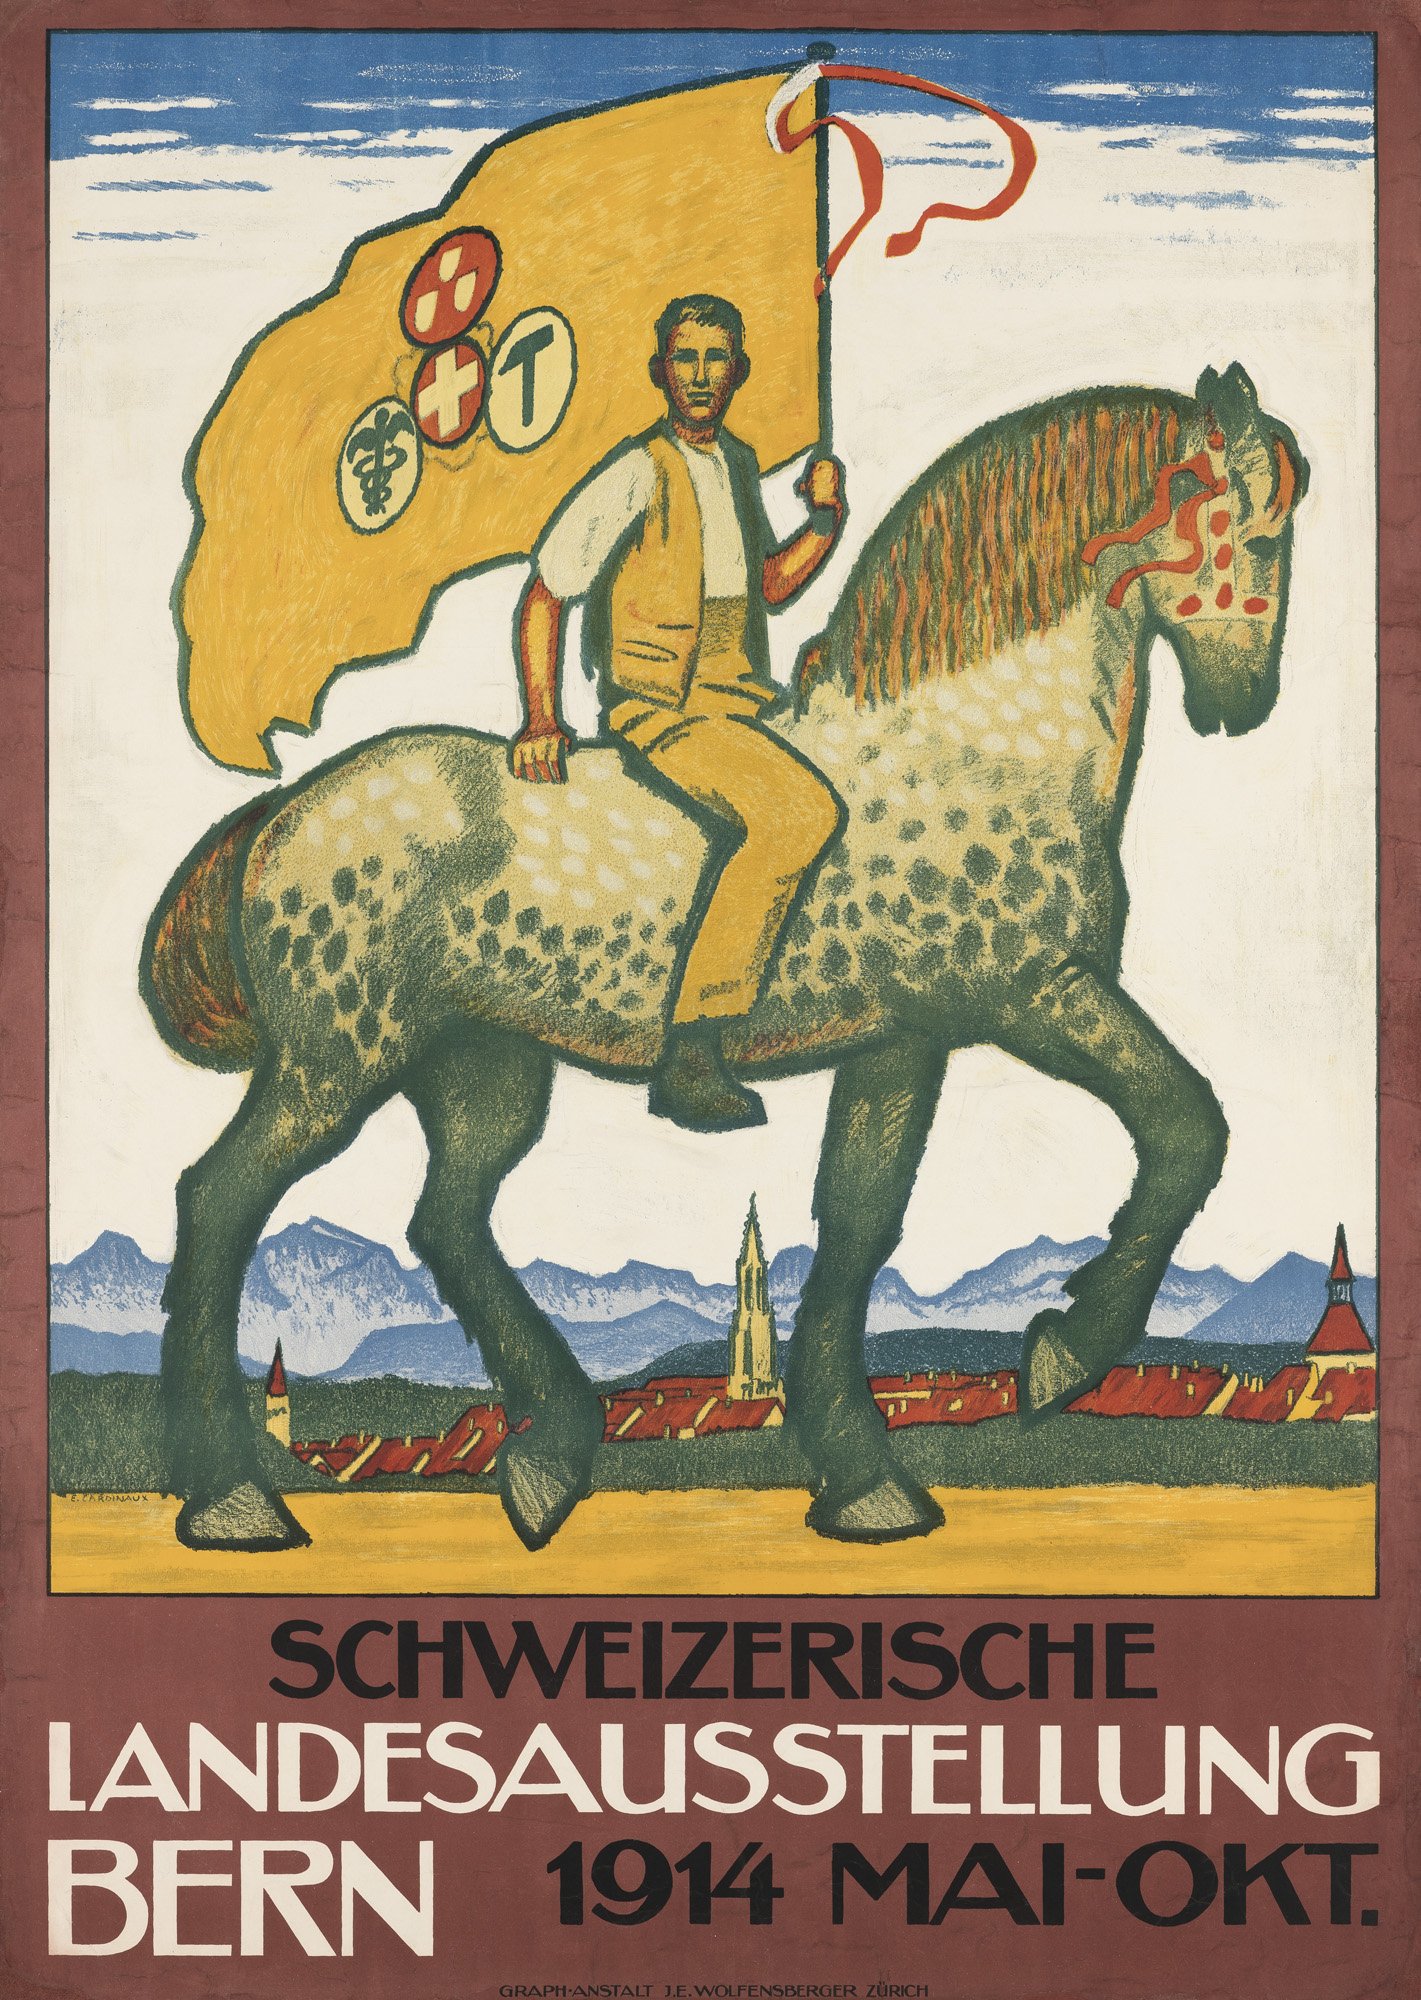 Emil Cardinaux, Schweizerische Landesausstellung Bern (Exposition nationale suisse à Berne), affiche, 1914, lithographie, Museum für Gestaltung Zürich, collection d’affiches